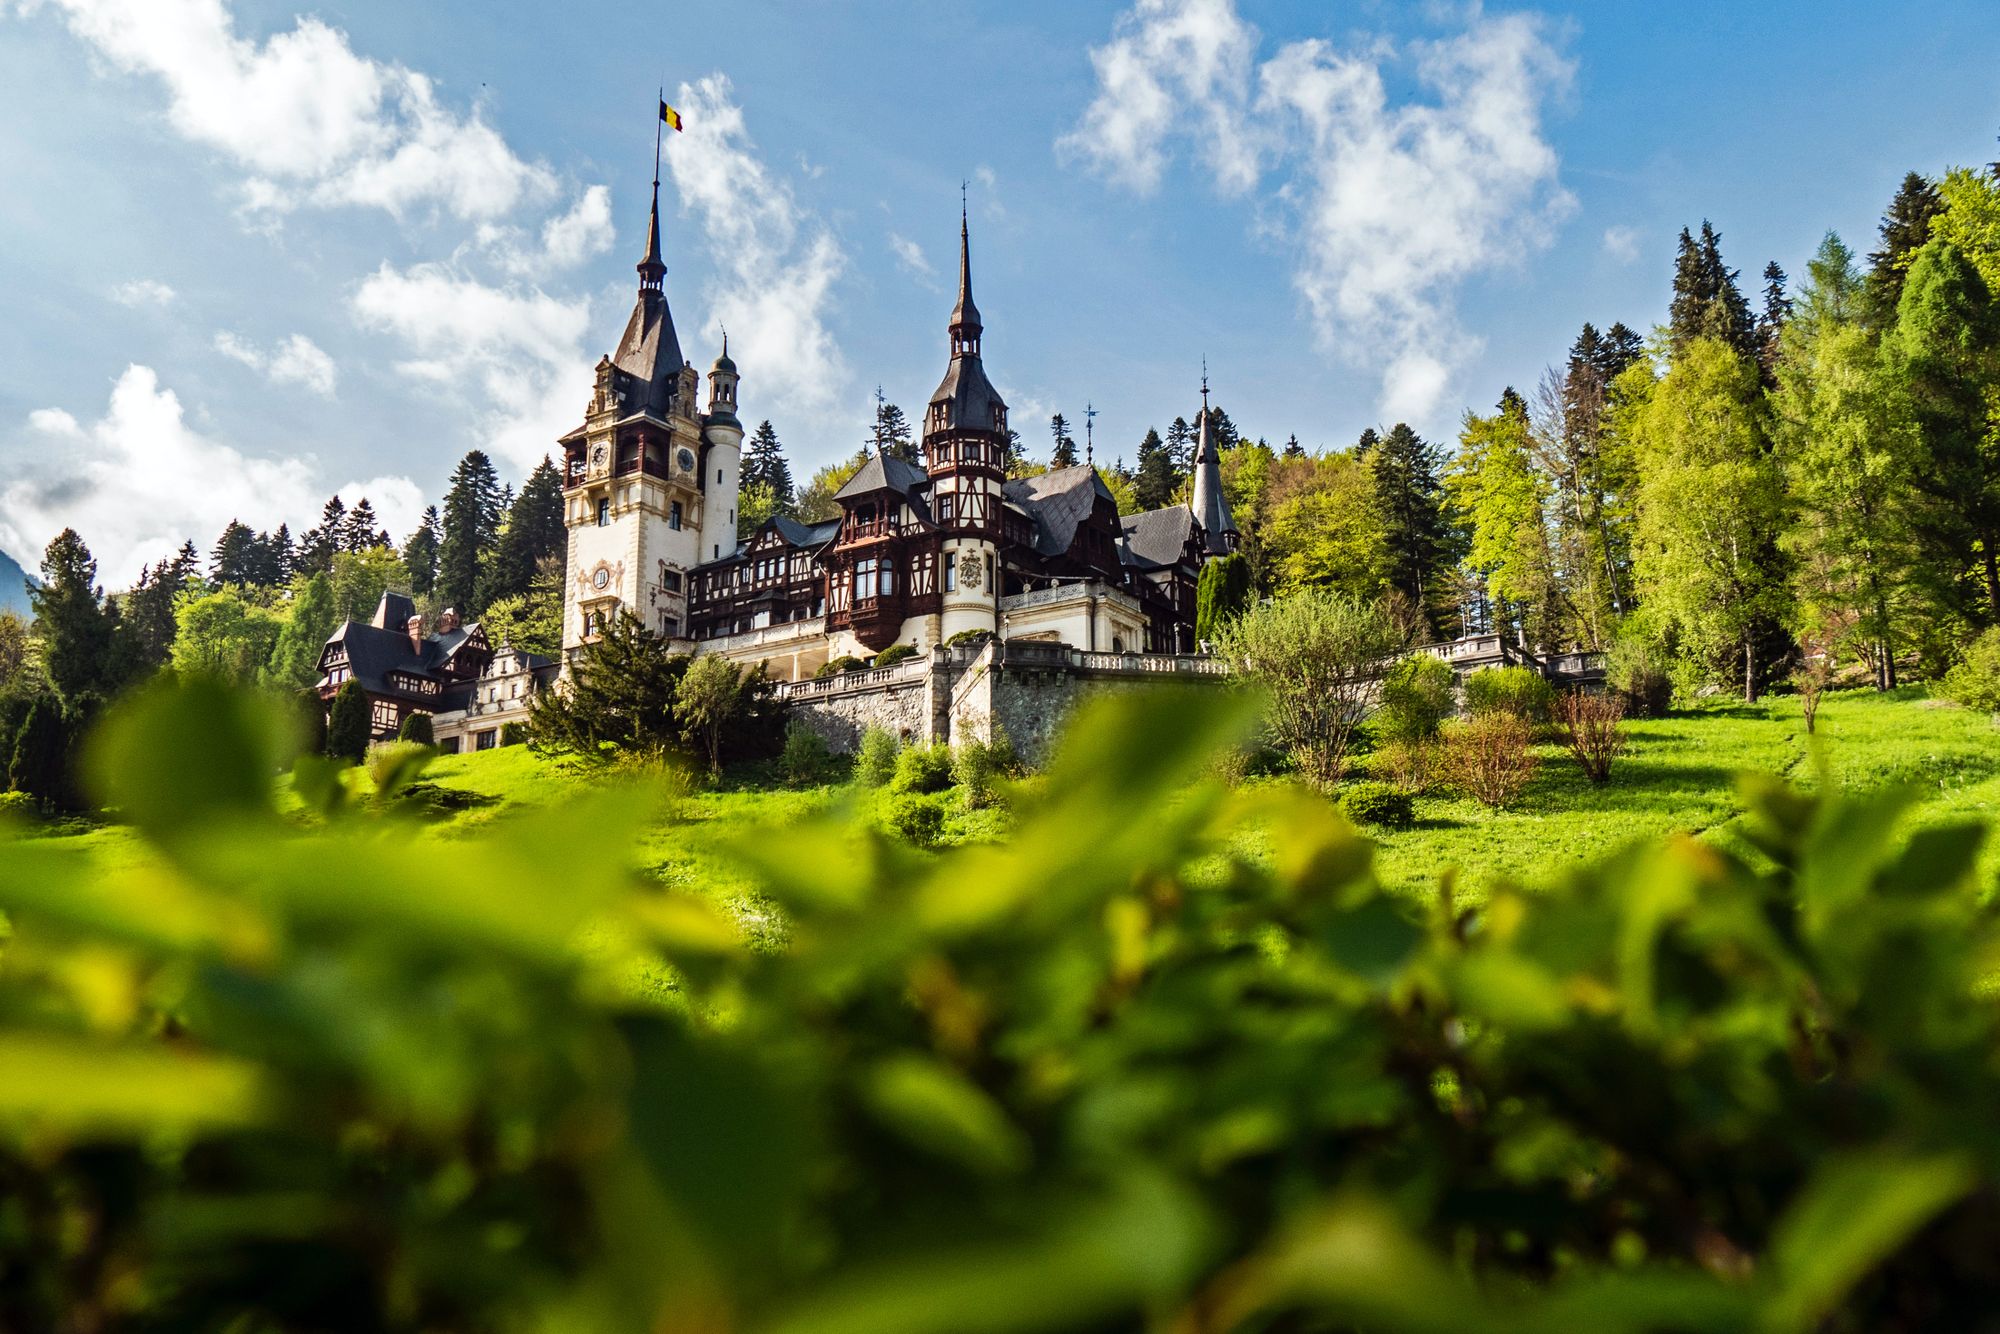 An Eastern European chateau in Romania